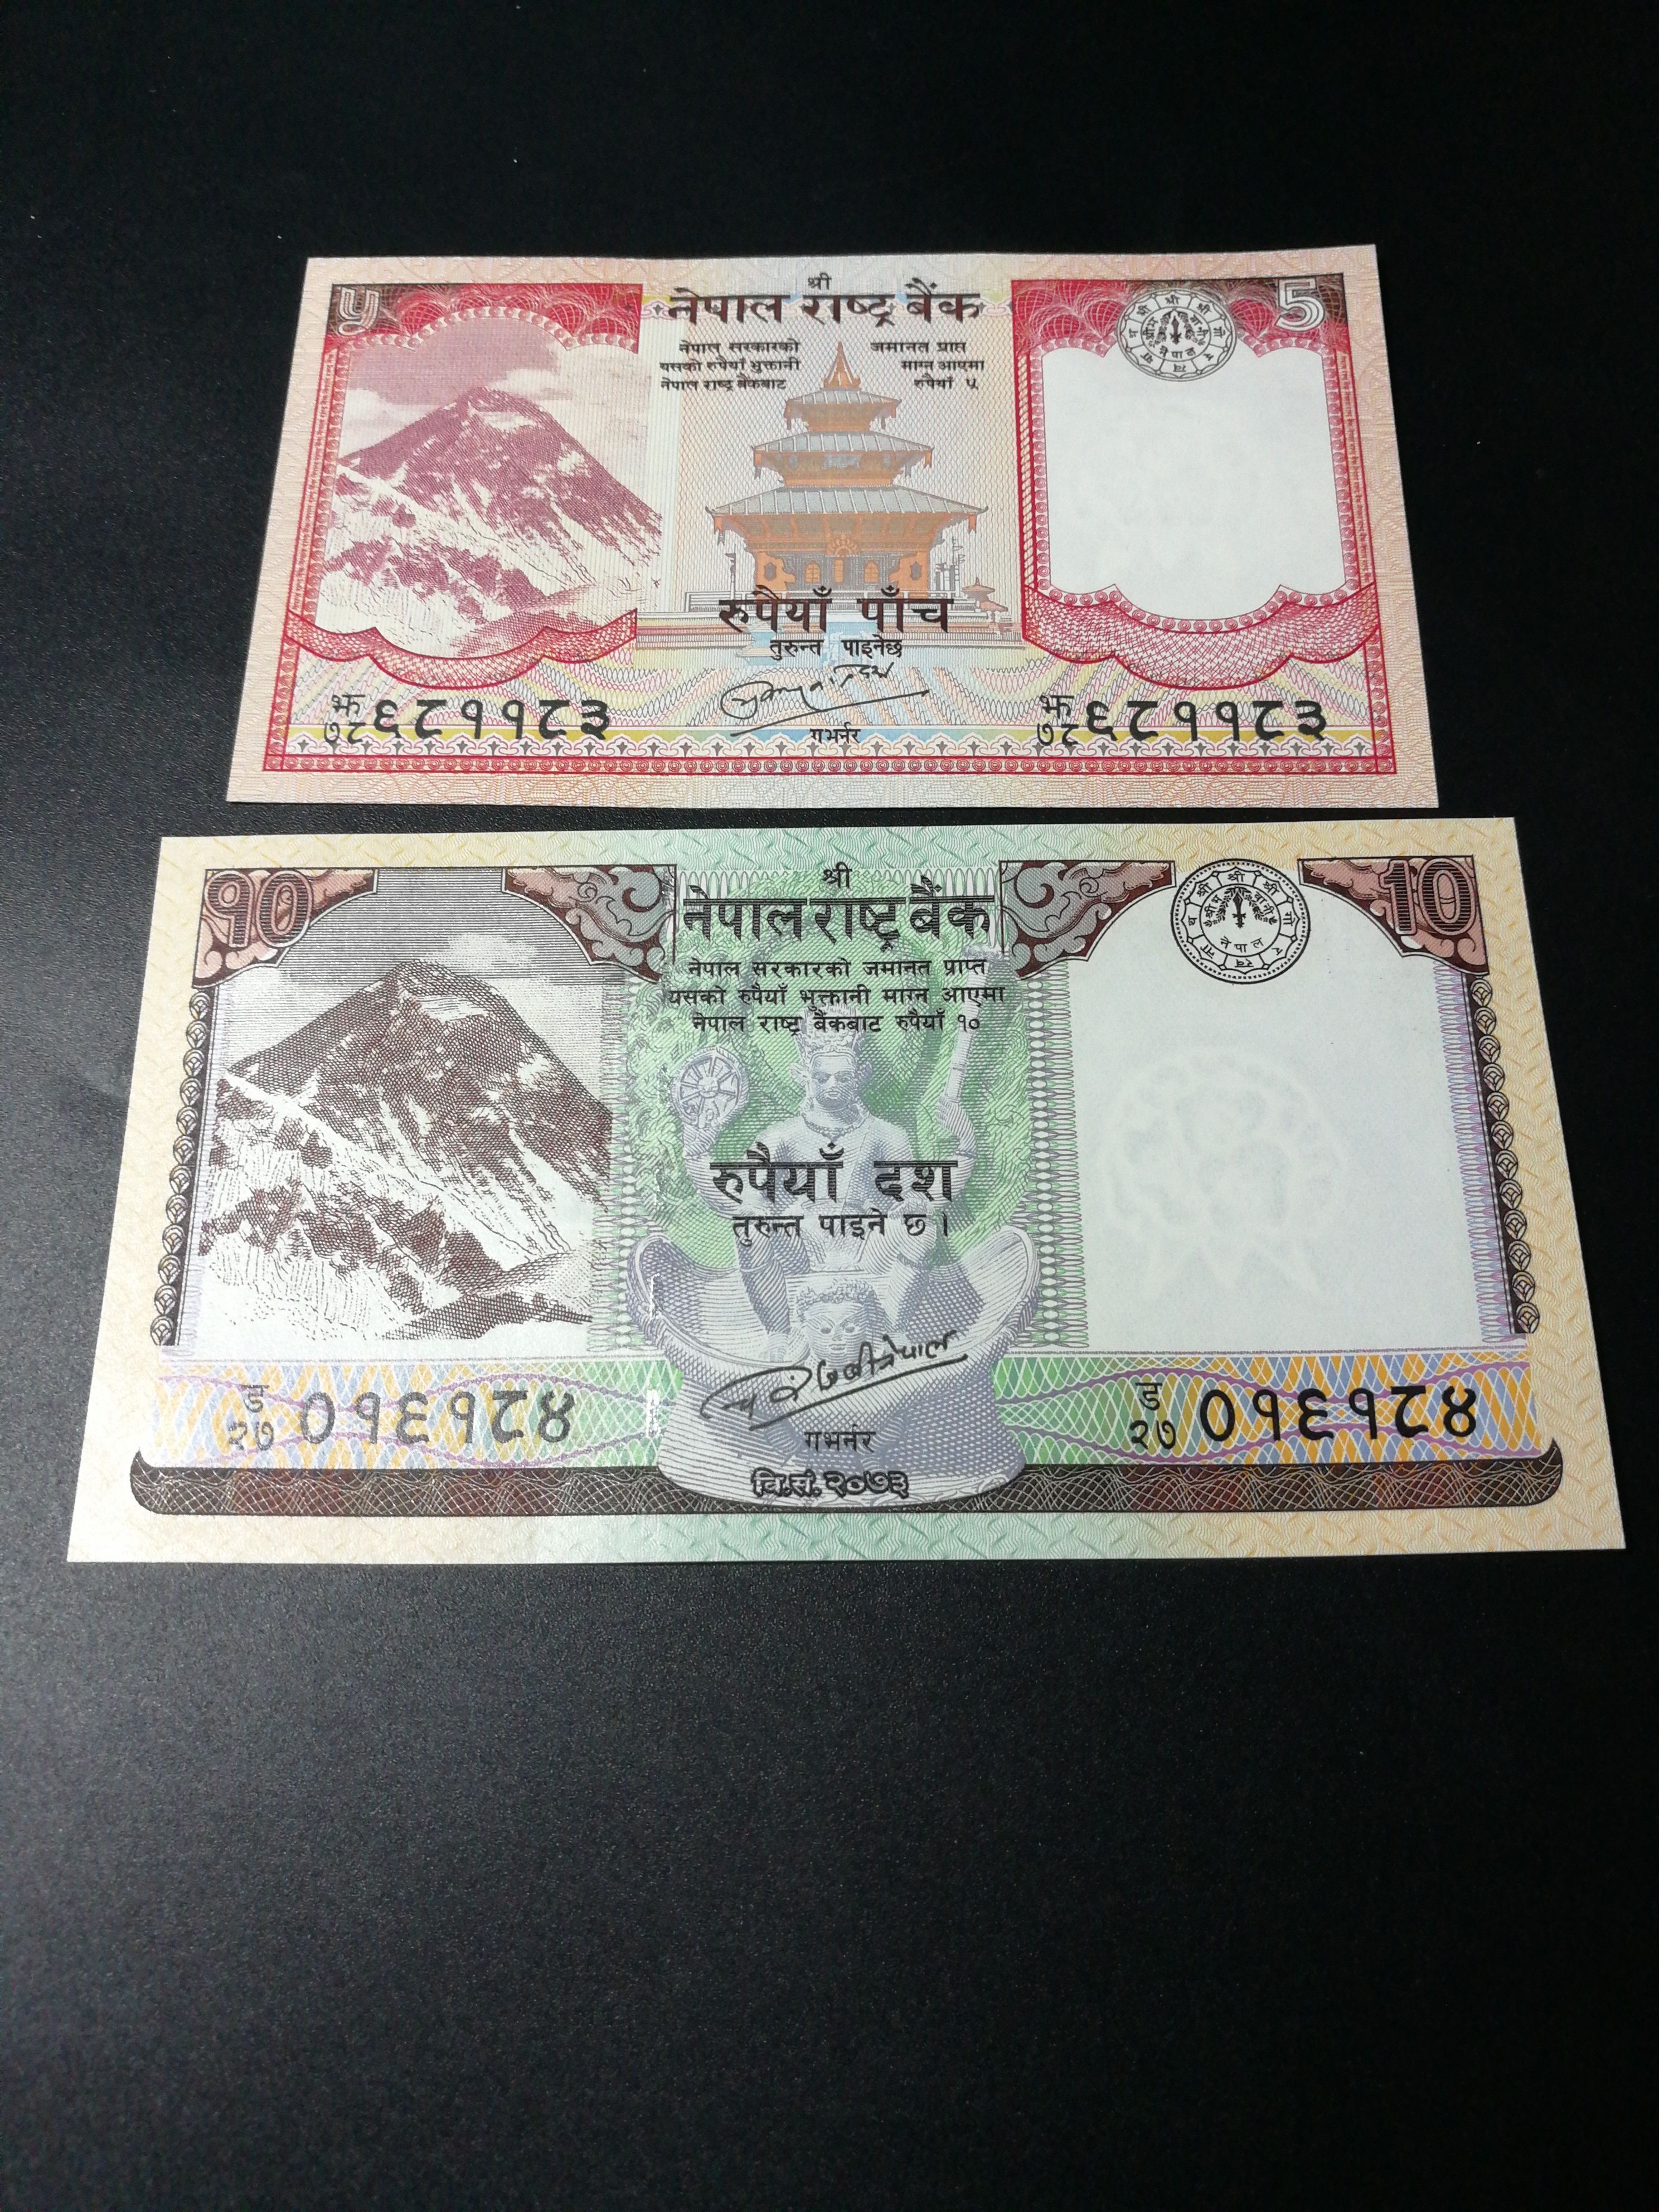 尼泊尔纸币卢比二张,包真,附简介,绝品,荧光效果